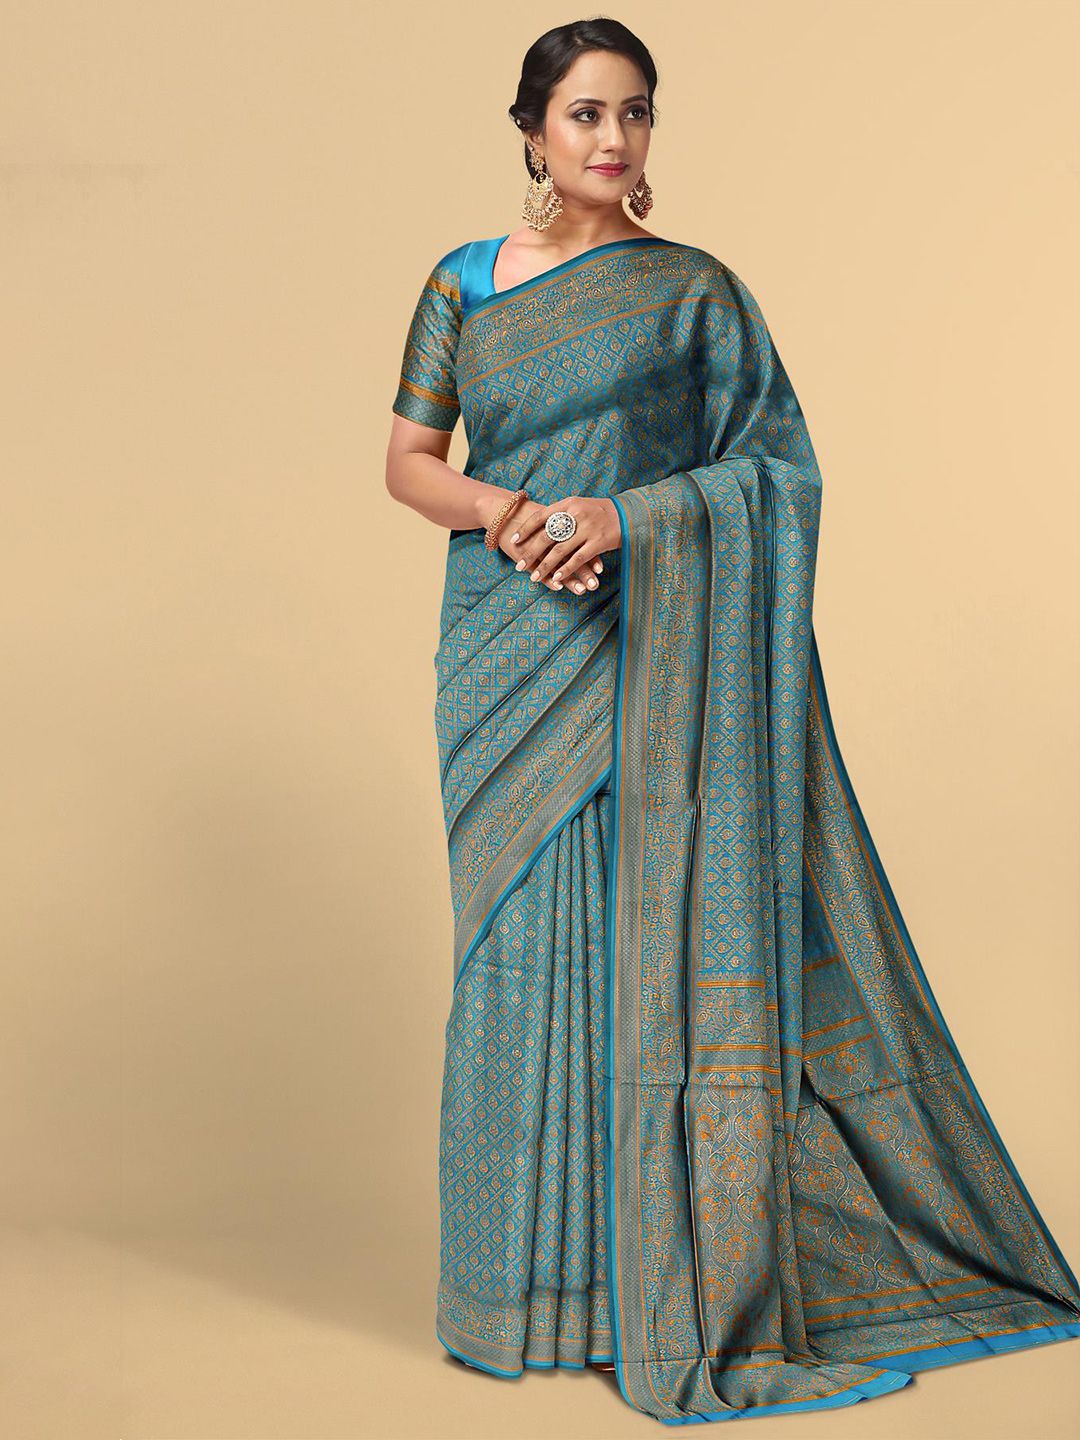 Kalamandir Blue & Gold-Toned Woven Design Zari Silk Blend Saree Price in India